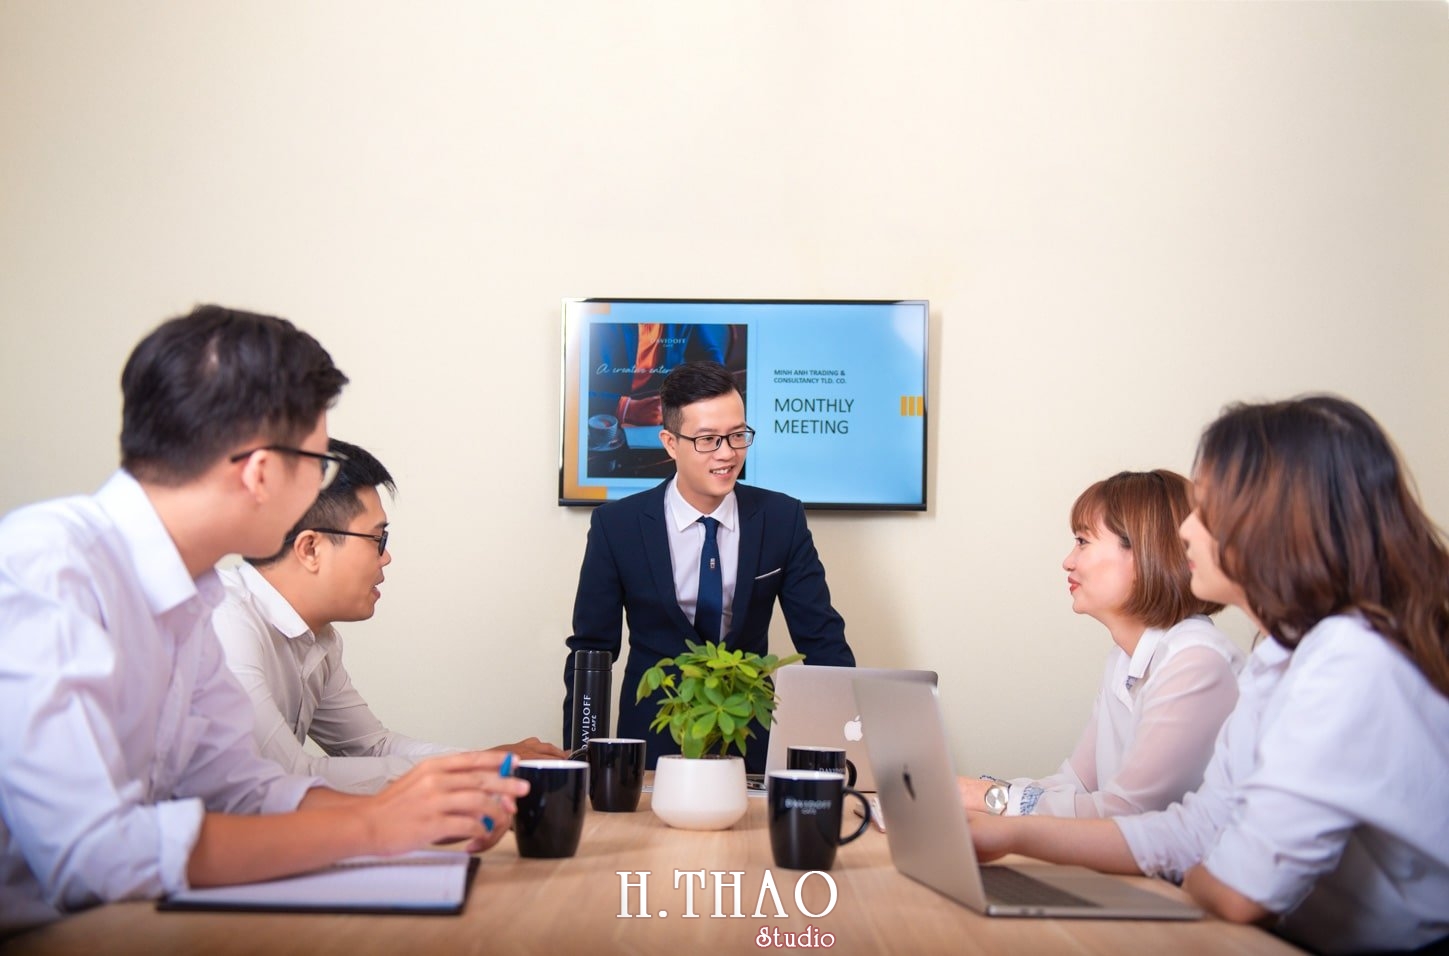 anh cong ty 1 min - Dịch vụ chụp ảnh văn phòng công ty chuyên nghiệp tại Tp.HCM – HThao Studio